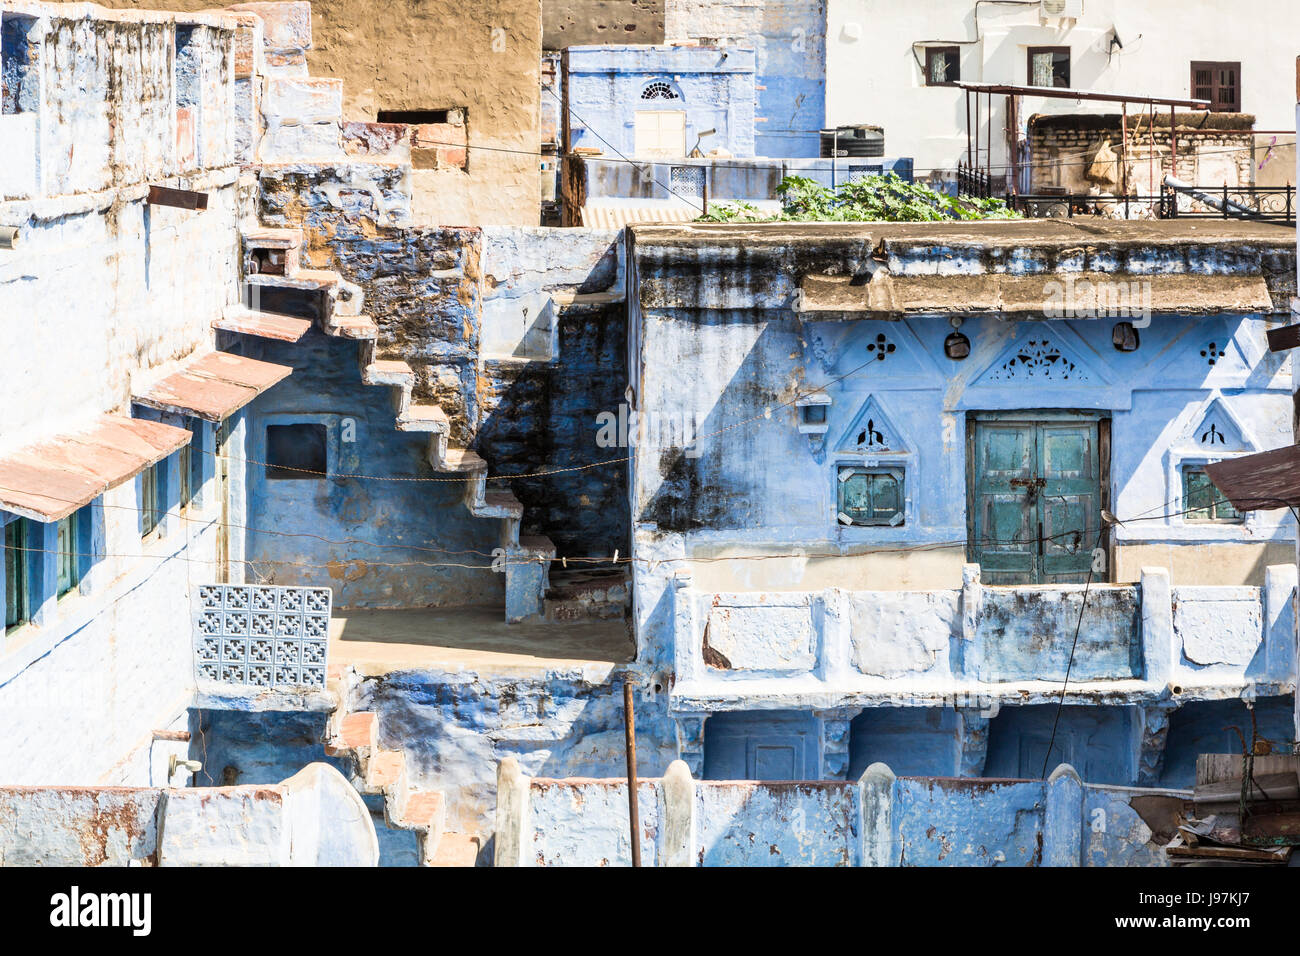 La célèbre ville bleu Jodphur au Rajasthan, Inde. La ville est célèbre pour avoir la plupart des murs de la vieille ville peint en bleu Banque D'Images